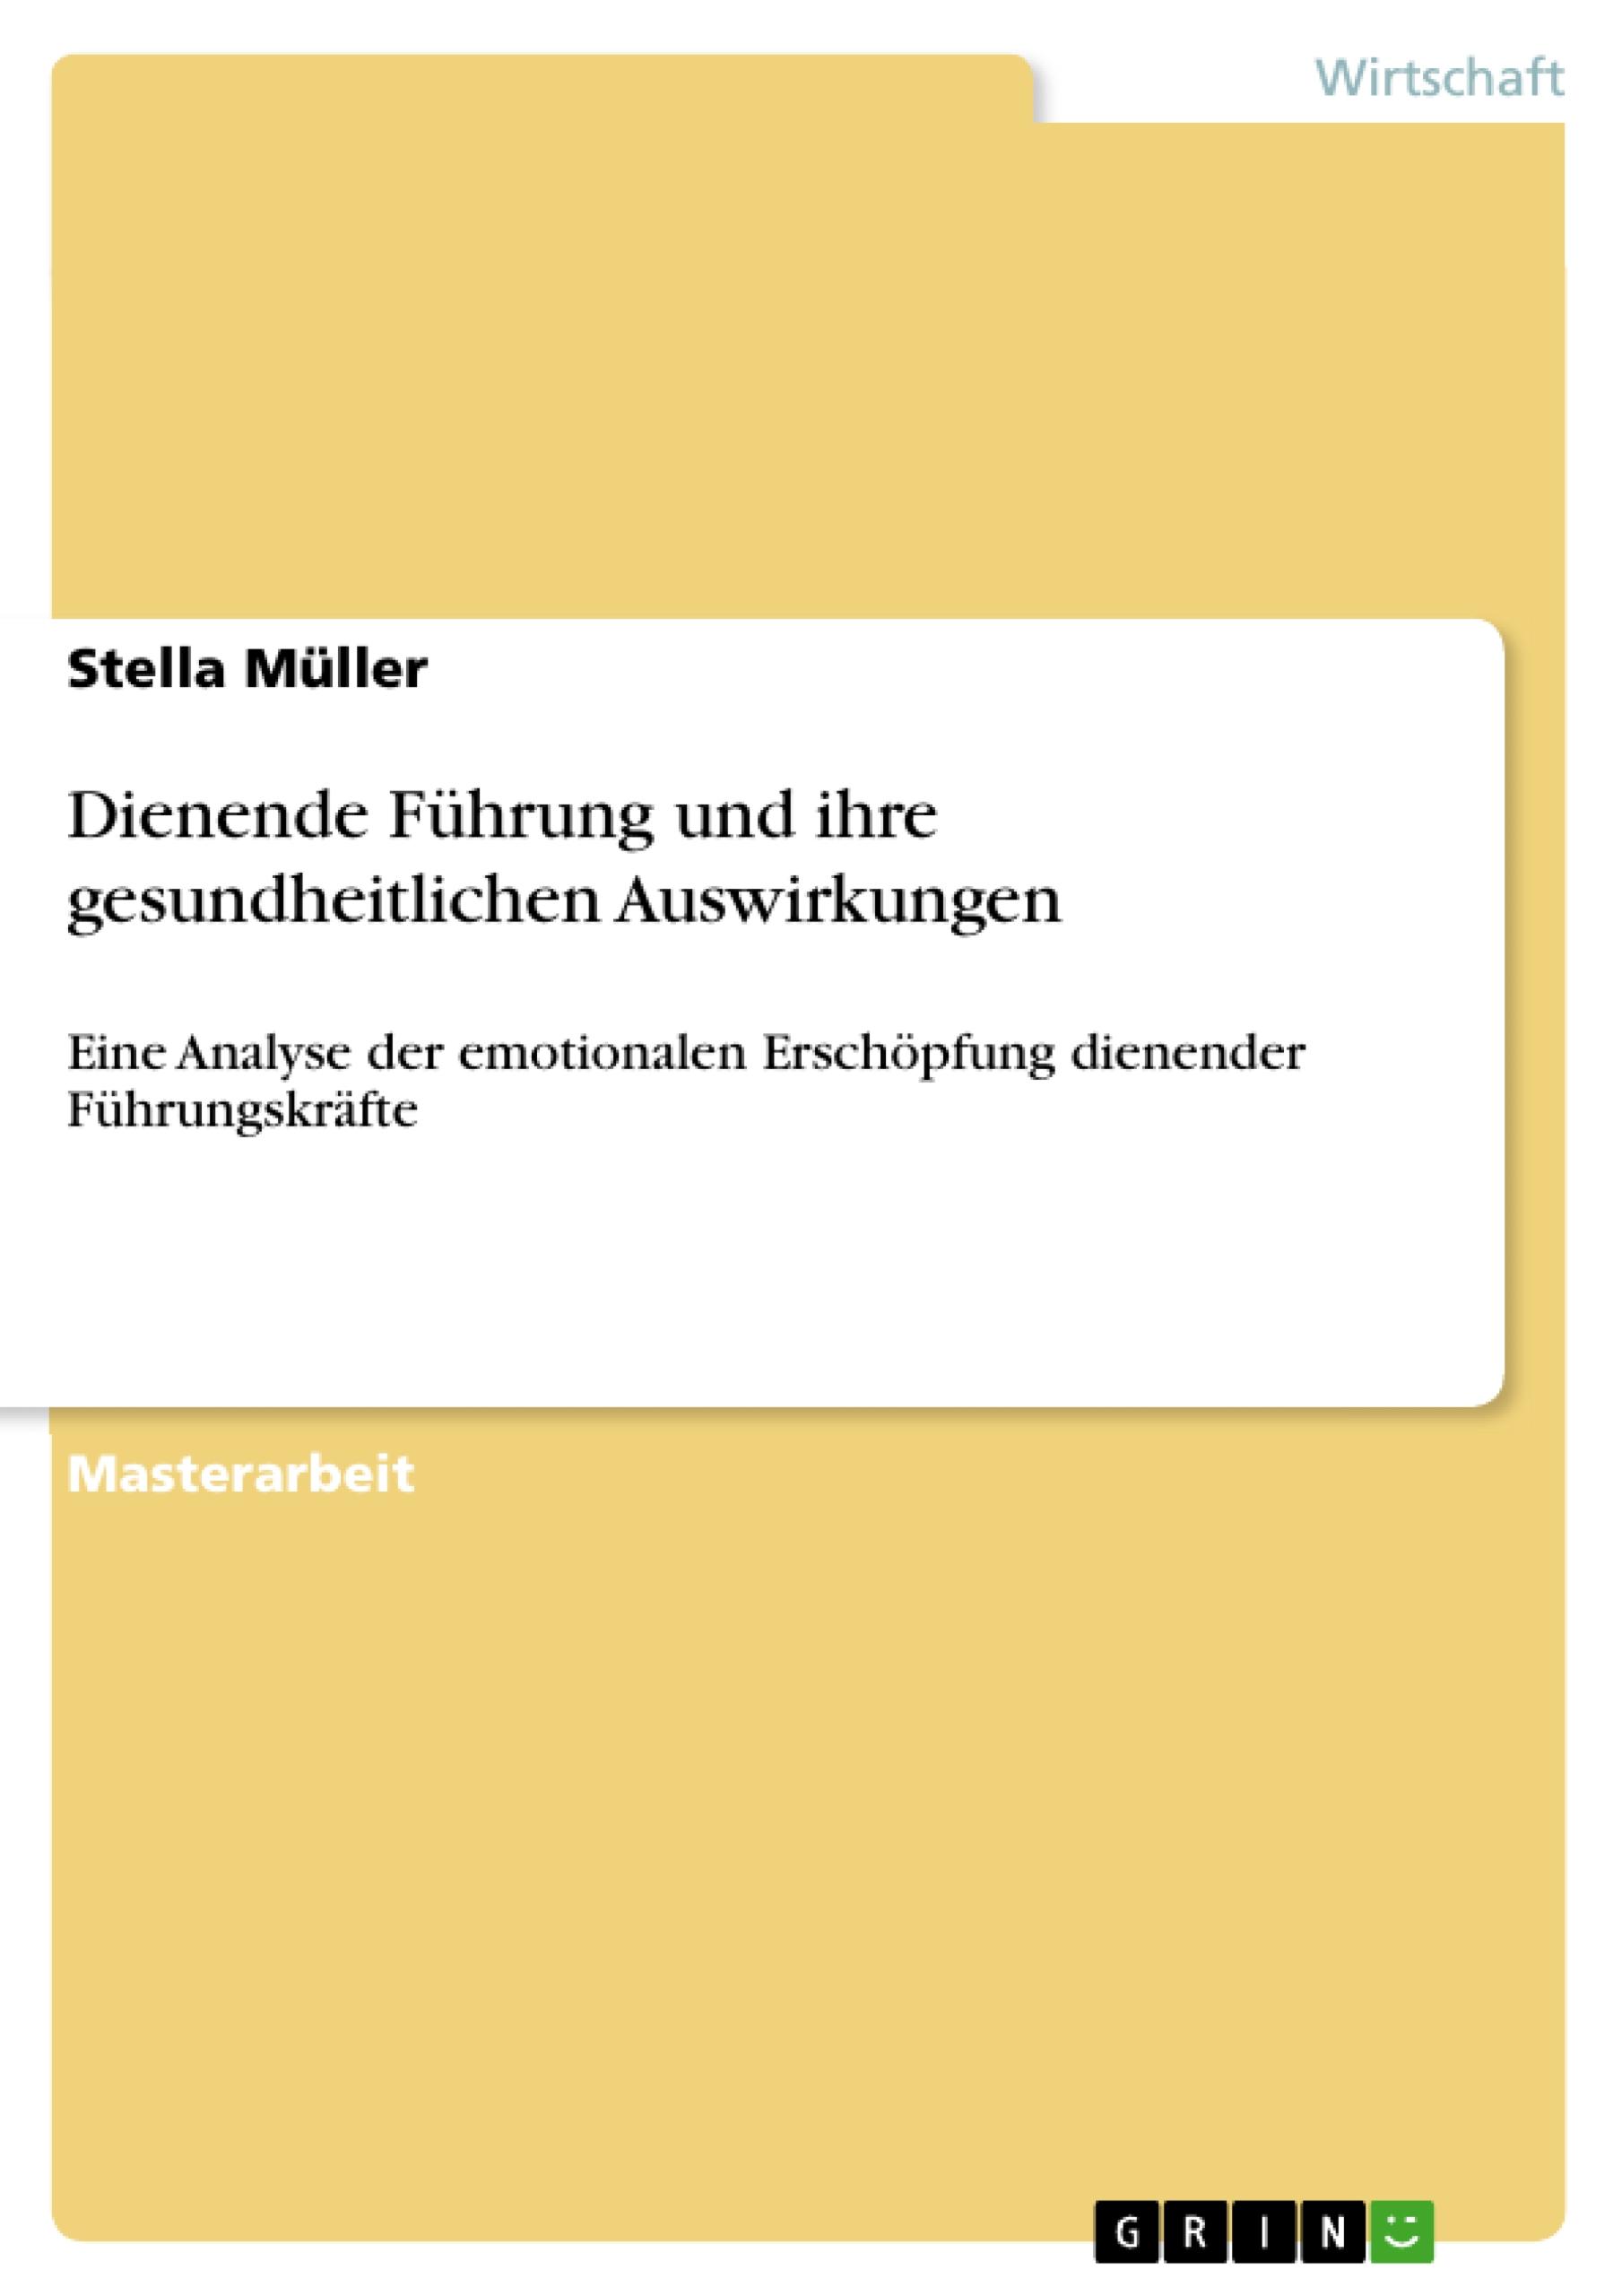 Dienende Fuehrung und ihre gesundheitlichen Auswirkungen - Mueller, Stella